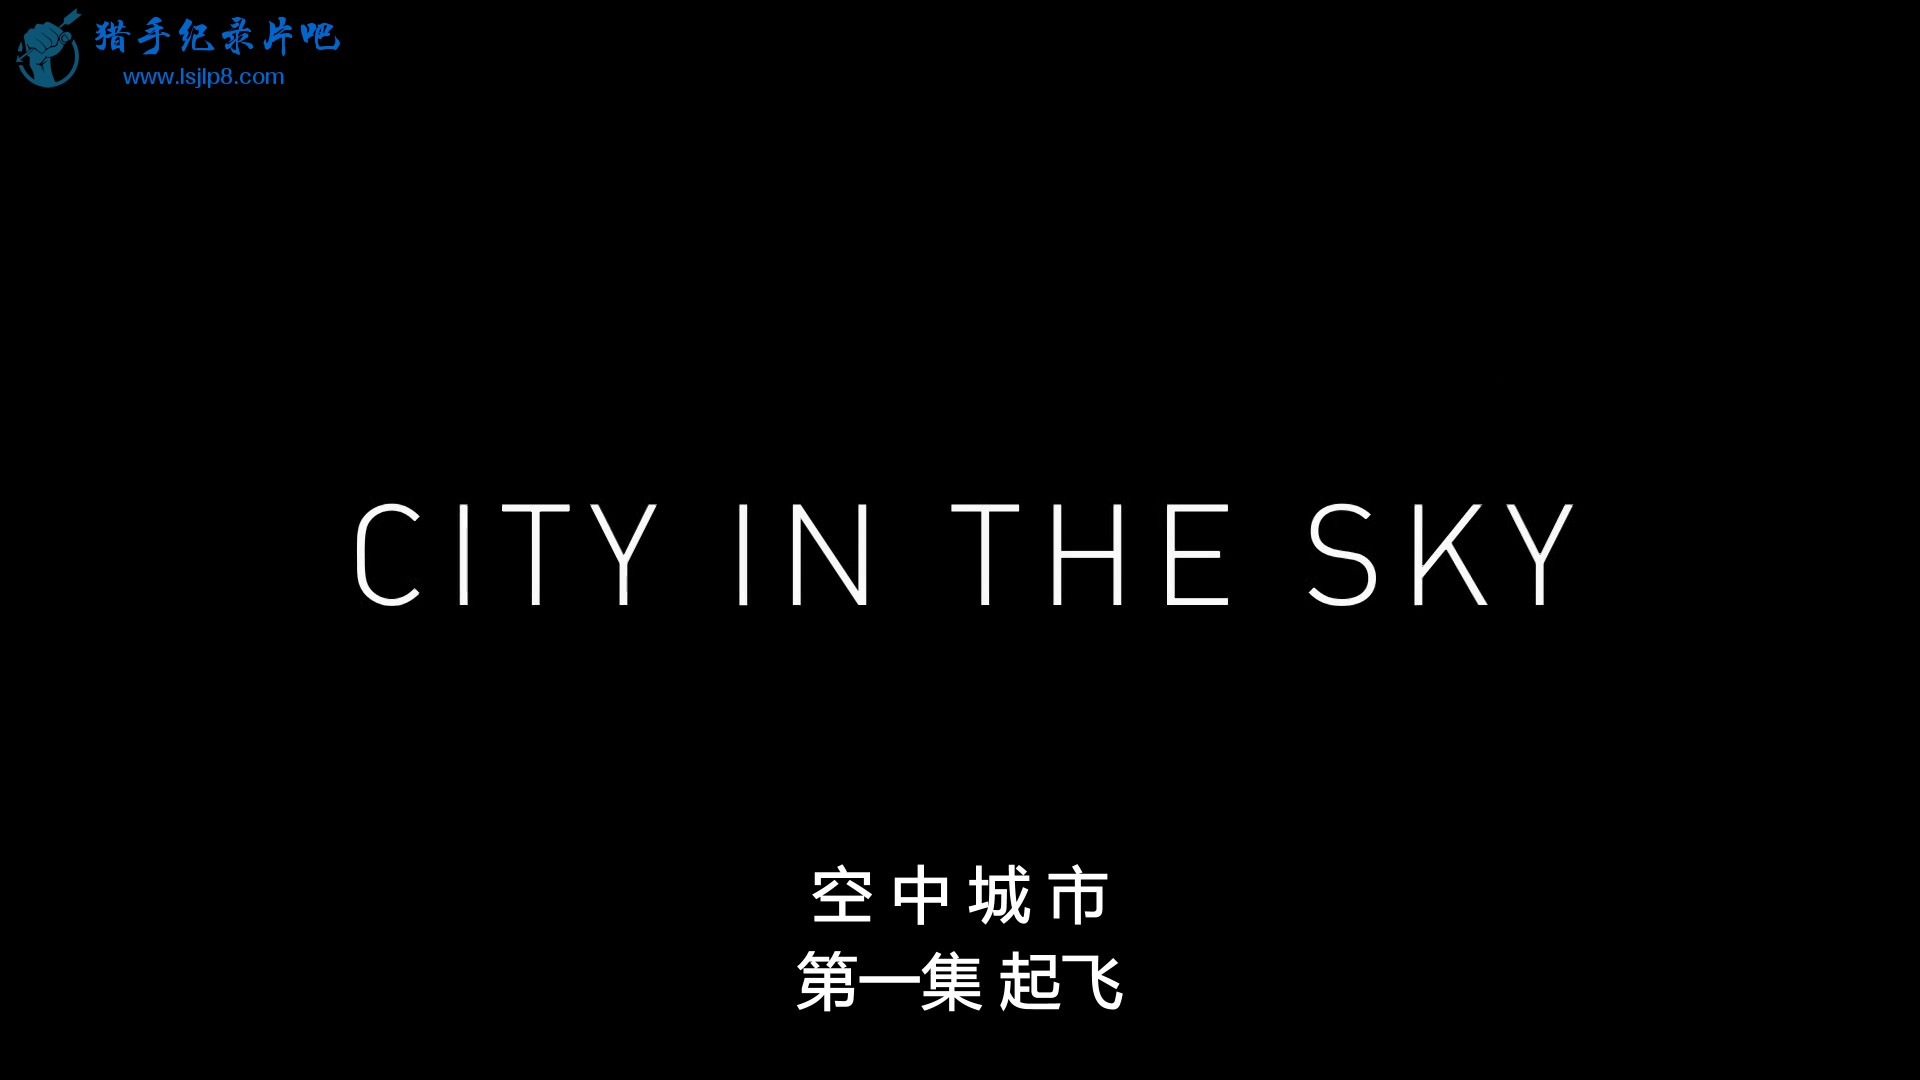 City.in.the.Sky.S01E01.1080p.NF.WEB-DL.DDP2.0.x264-qpdb.mkv_20200707_092100.092.jpg